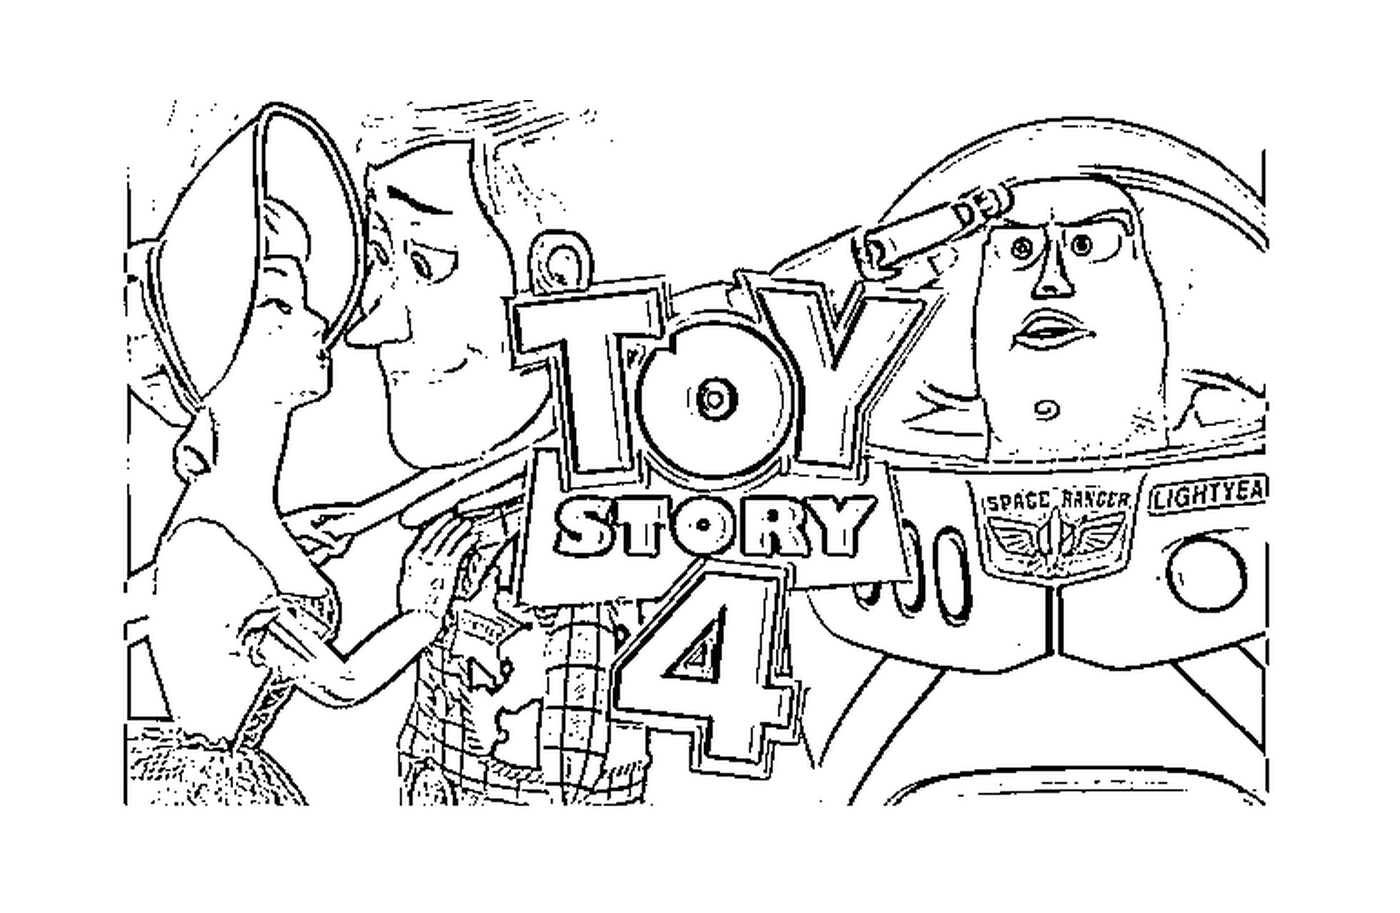  Toy Story 4, nuova emozionante avventura 